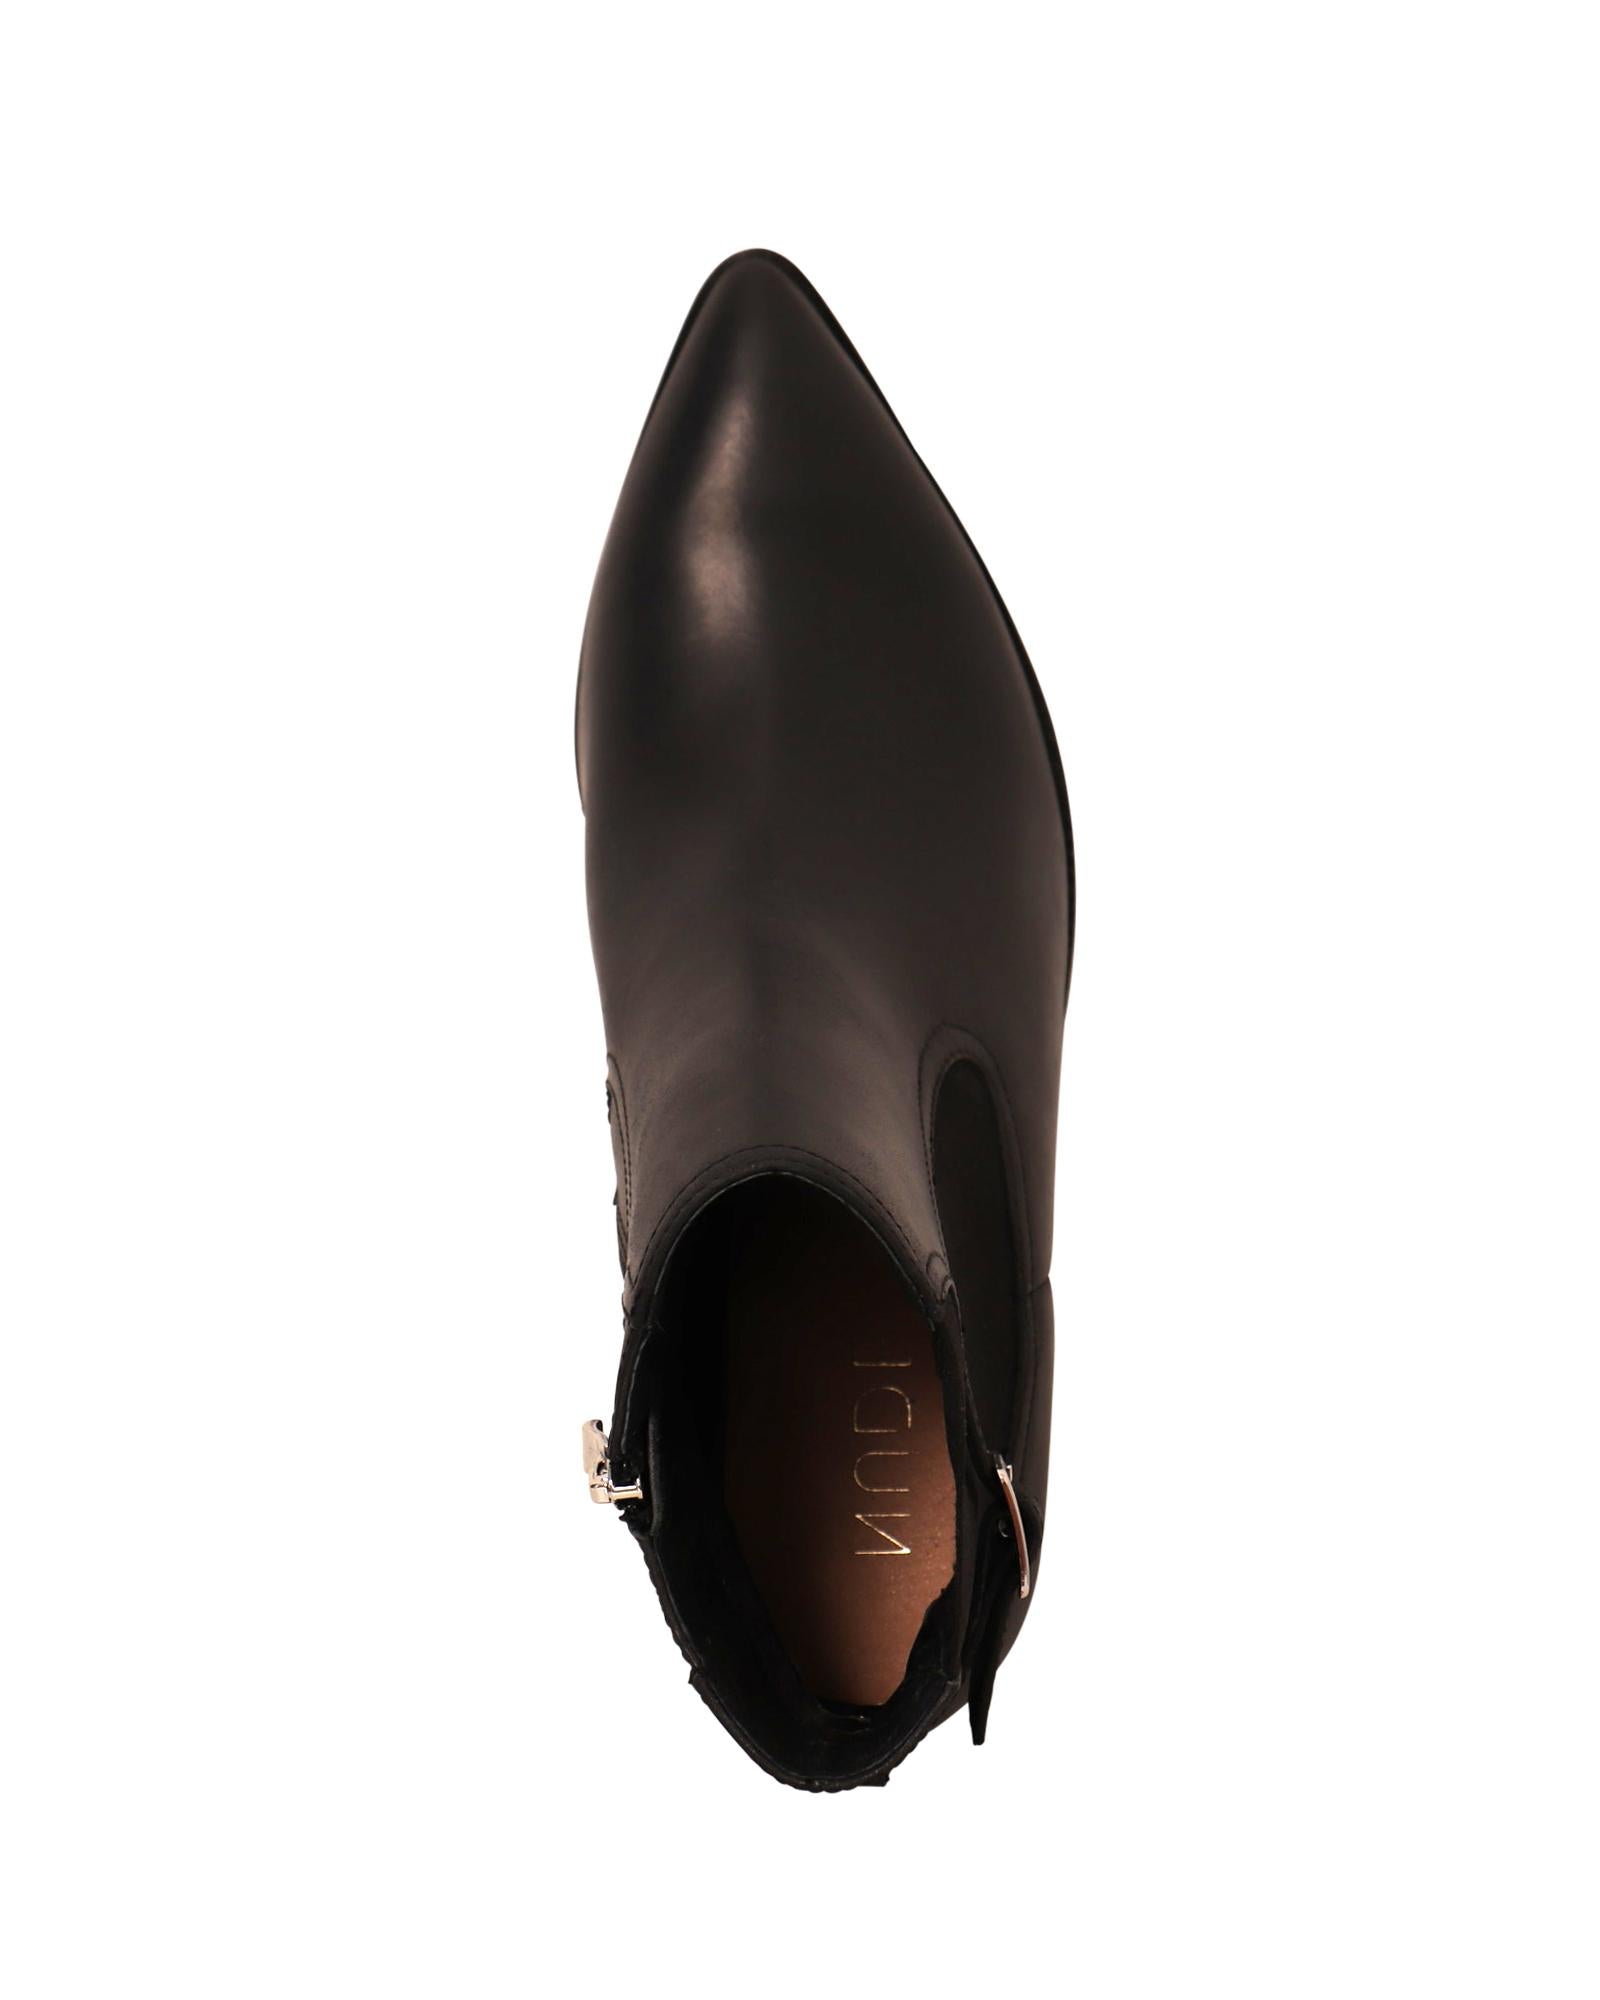 Klara Black 8cm Ankle Boot